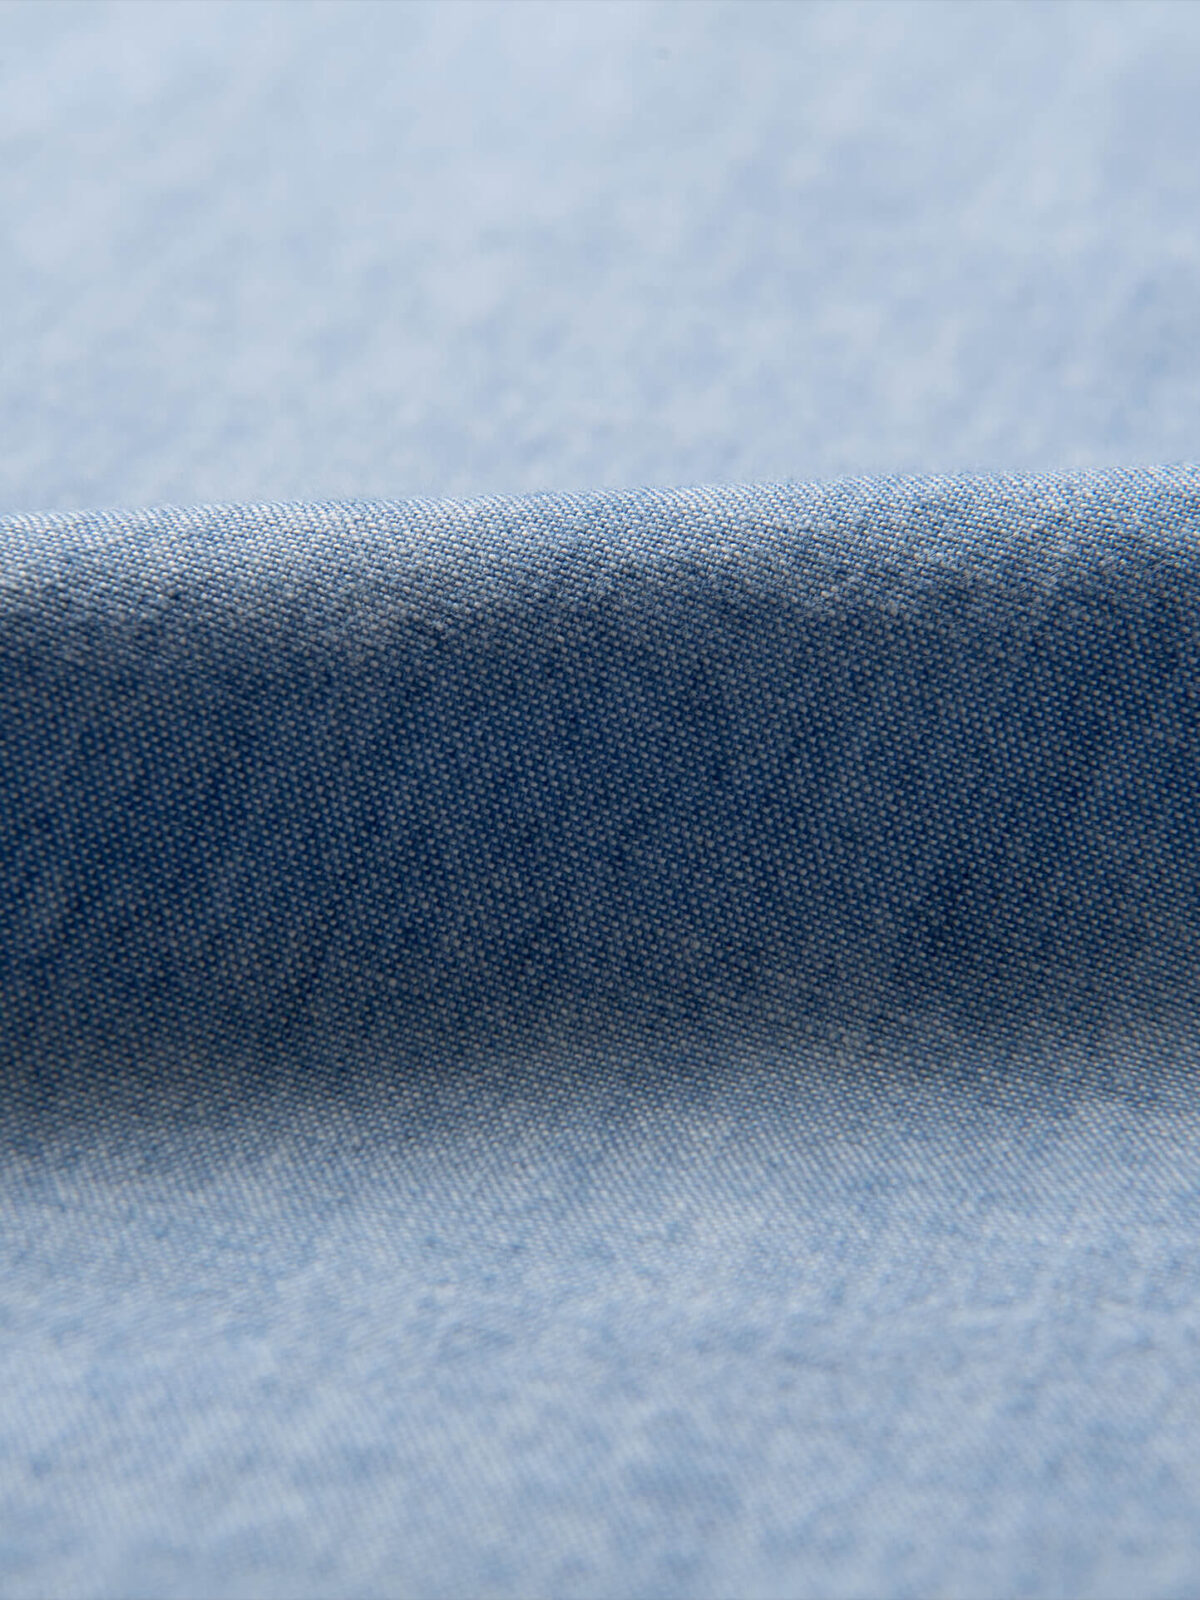 Premium Photo  Beautiful blue denim indigo fabric texture.